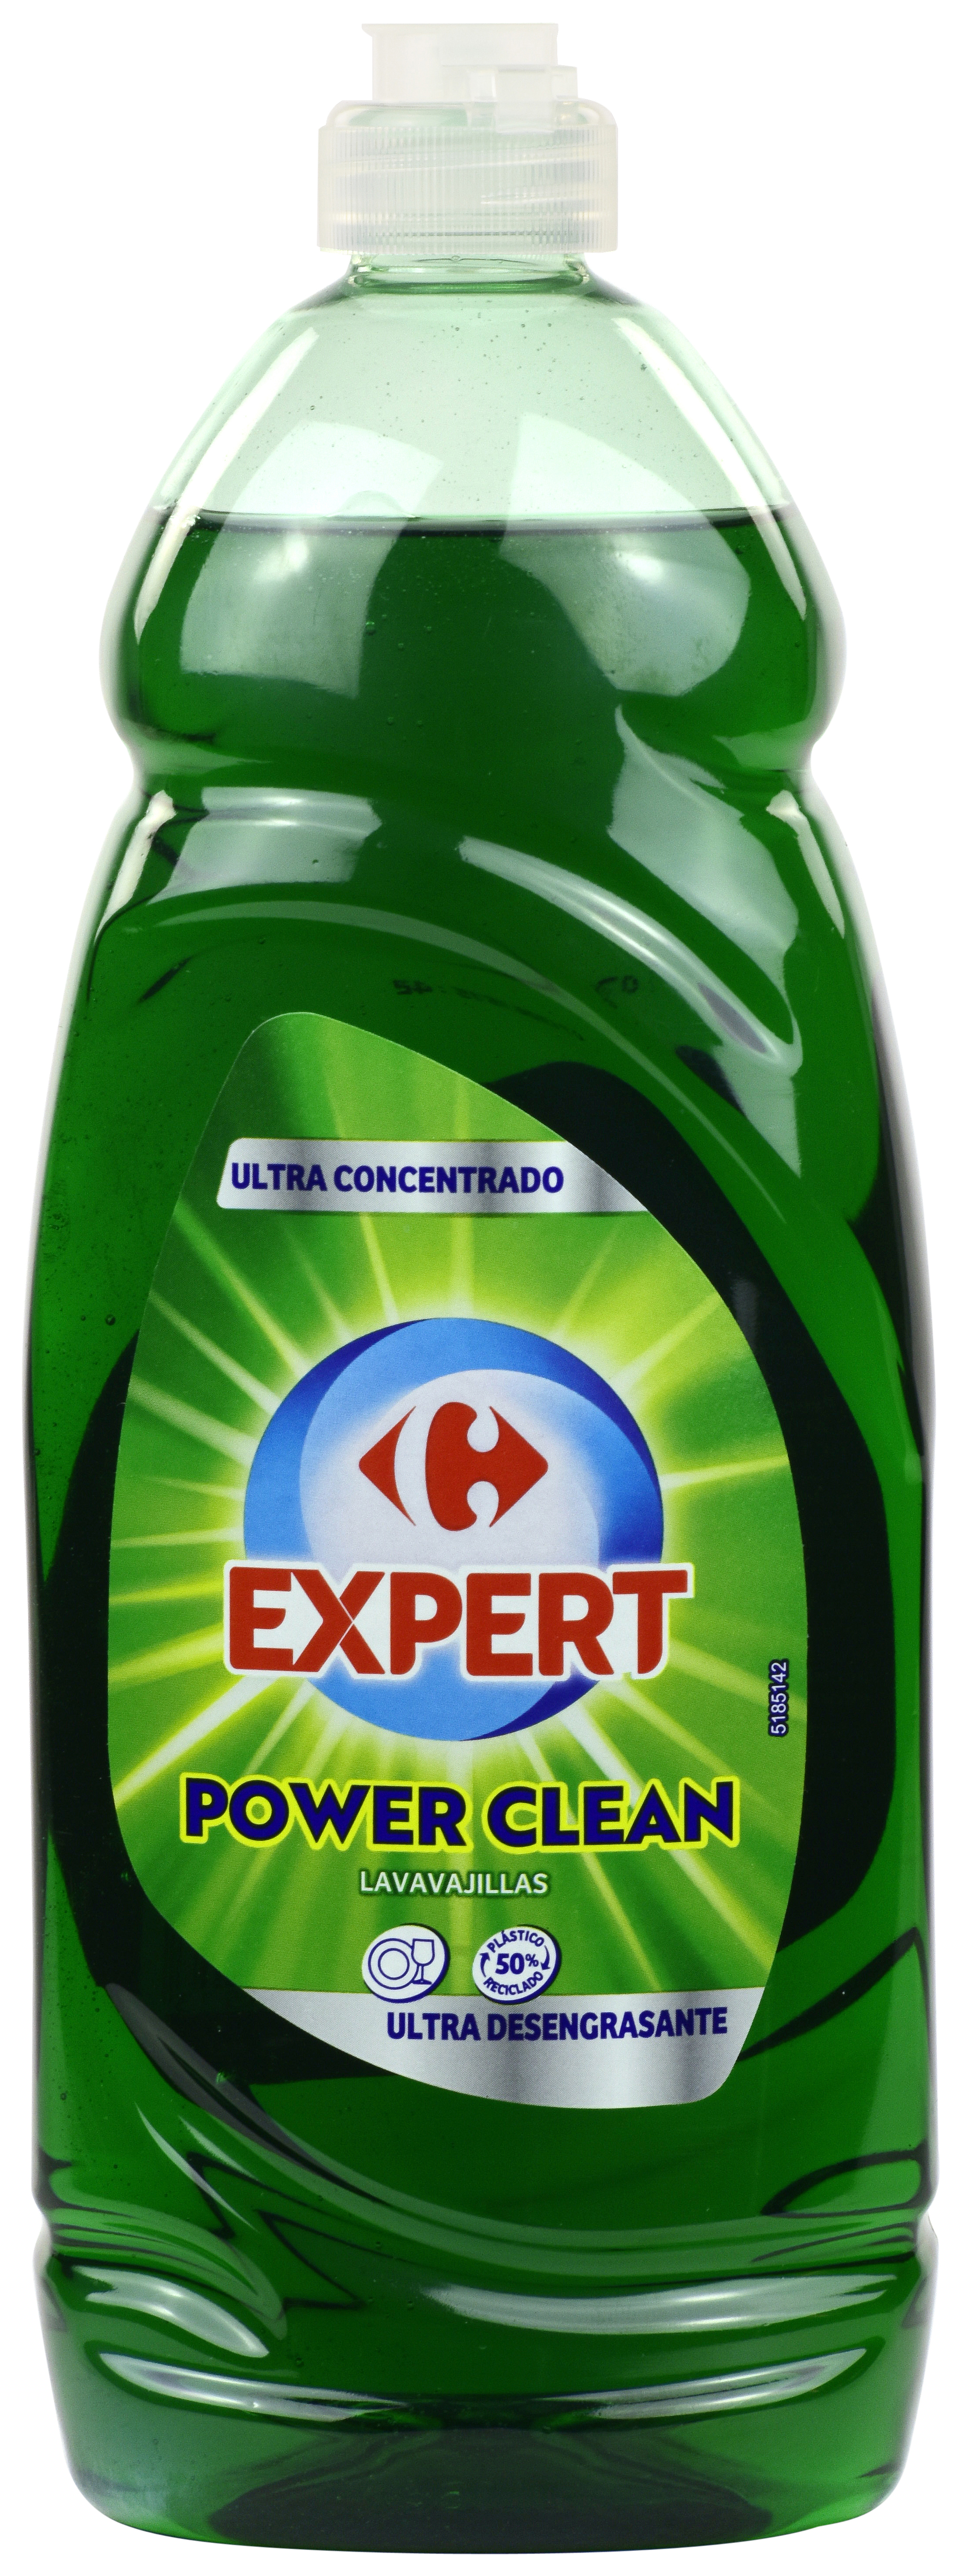 EXPERT POWER CLEAN